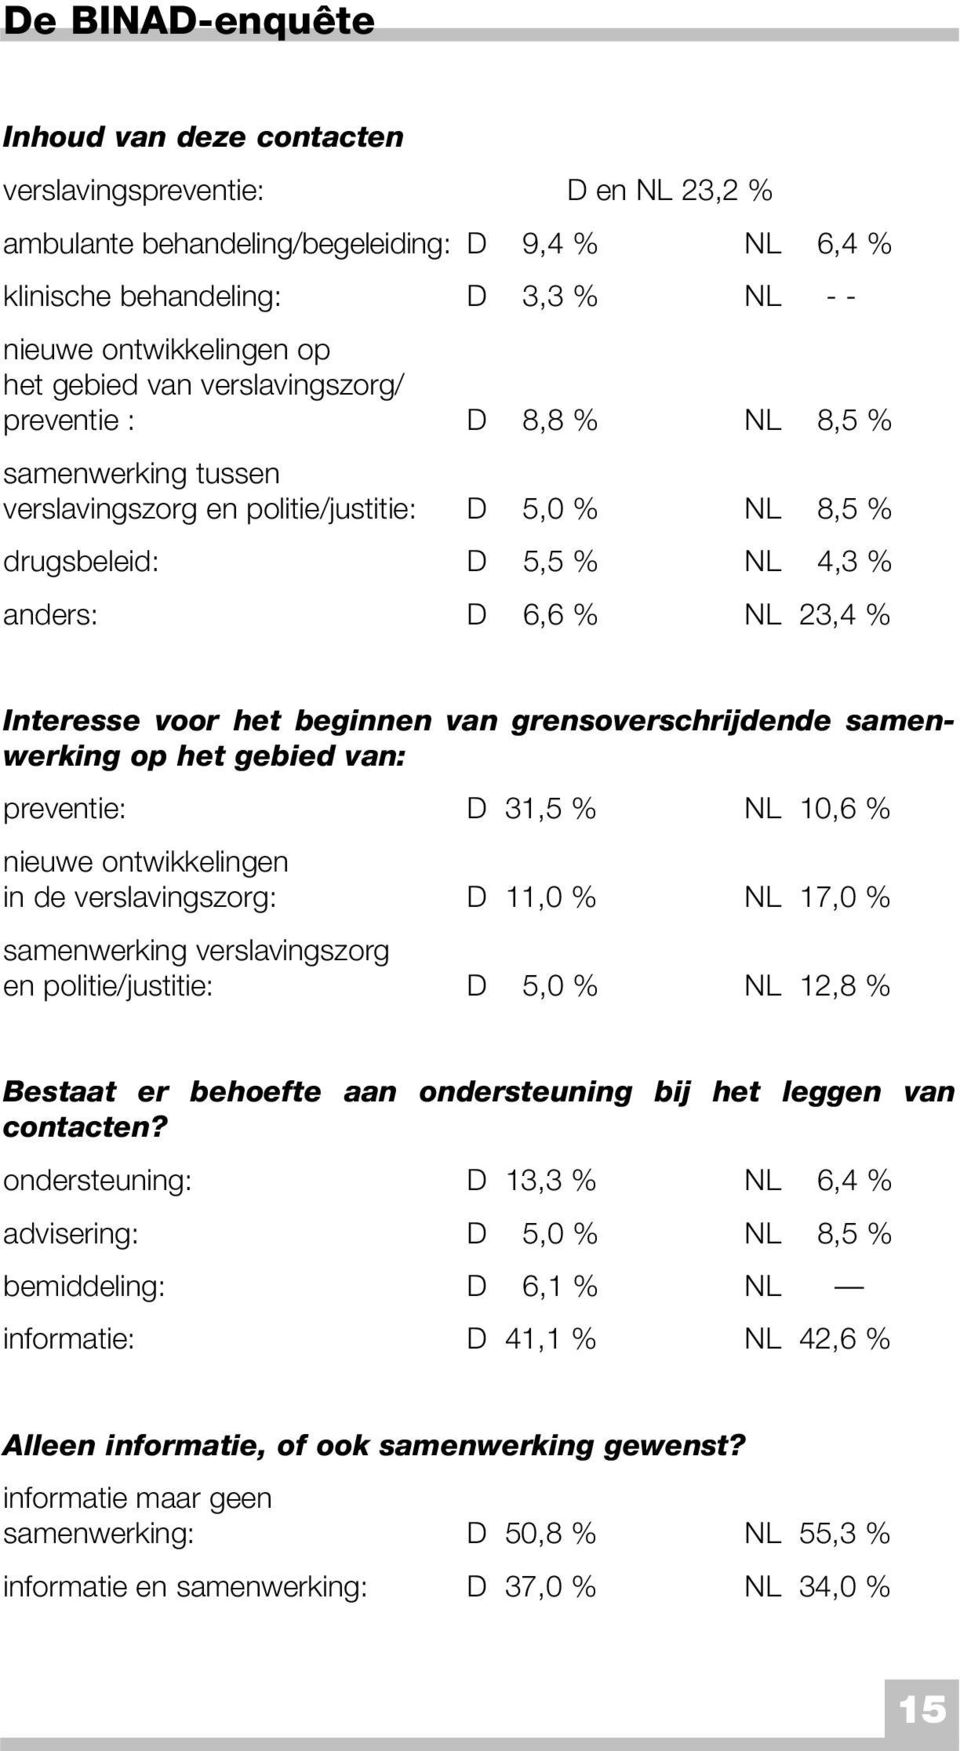 voor het beginnen van grensoverschrijdende samenwerking op het gebied van: preventie: D 31,5 % NL 10,6 % nieuwe ontwikkelingen in de verslavingszorg: D 11,0 % NL 17,0 % samenwerking verslavingszorg